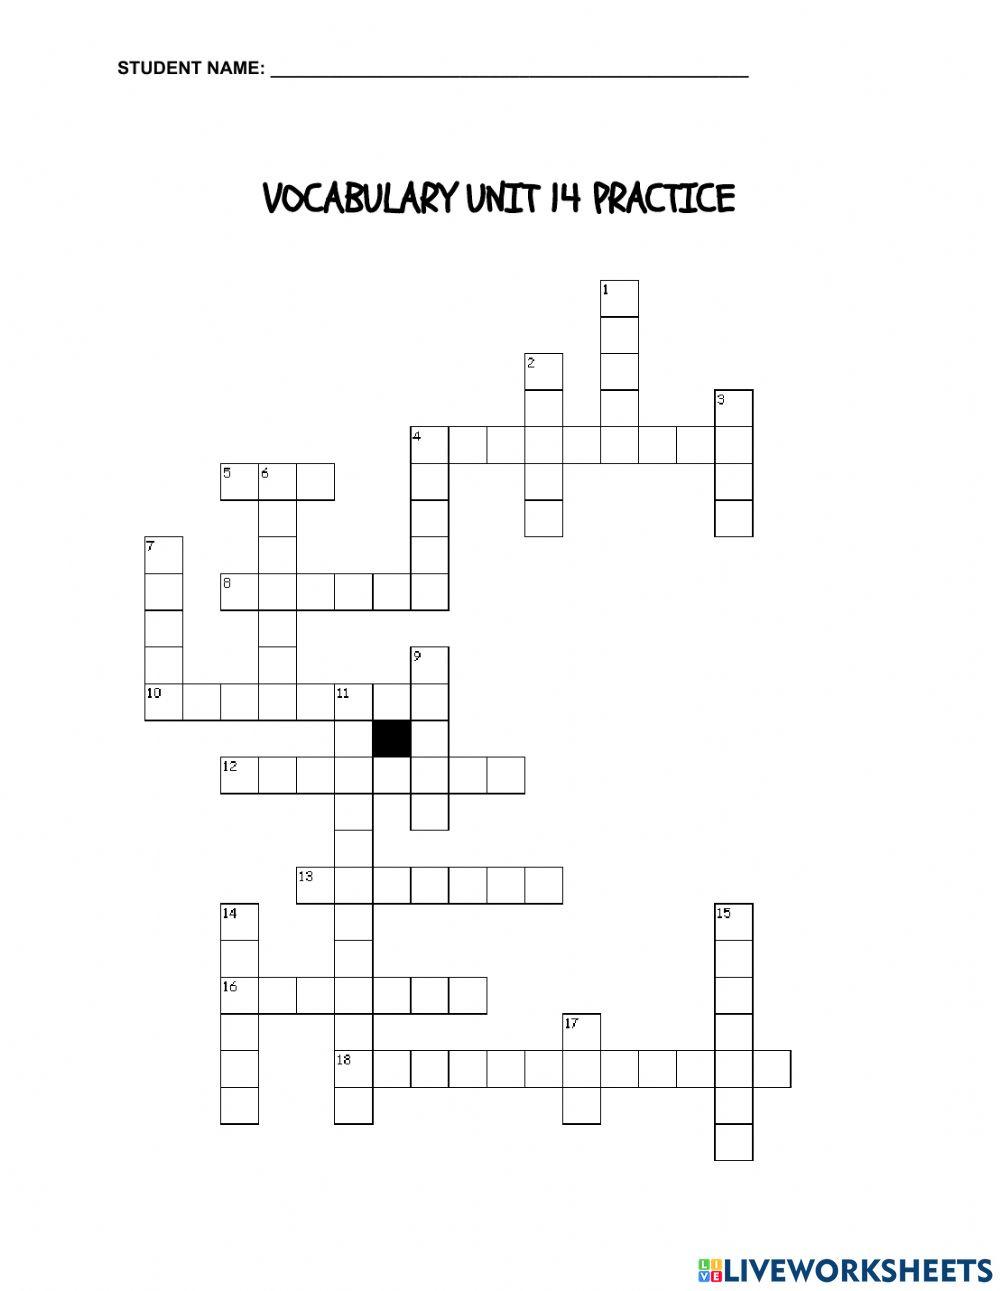 Voc. 14 Crossword Puzzle